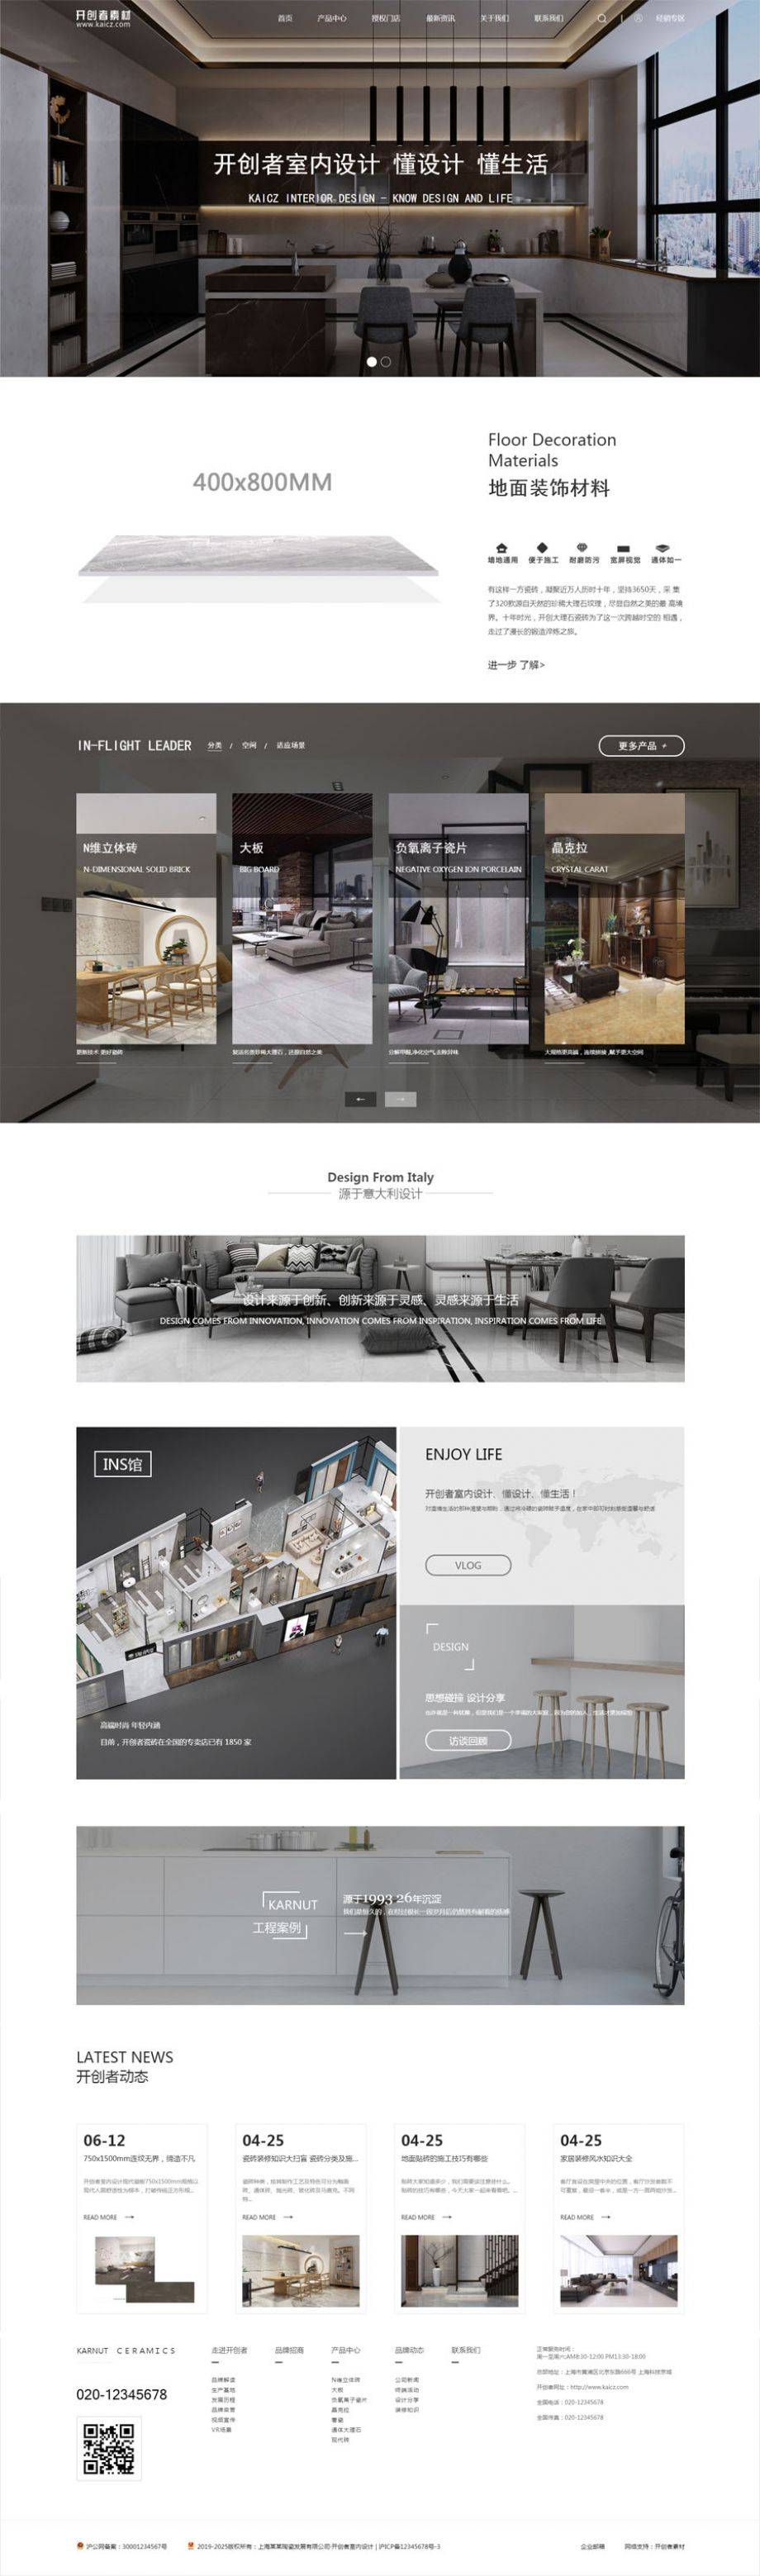 室内装修设计_地面装饰瓷砖材料网站模板